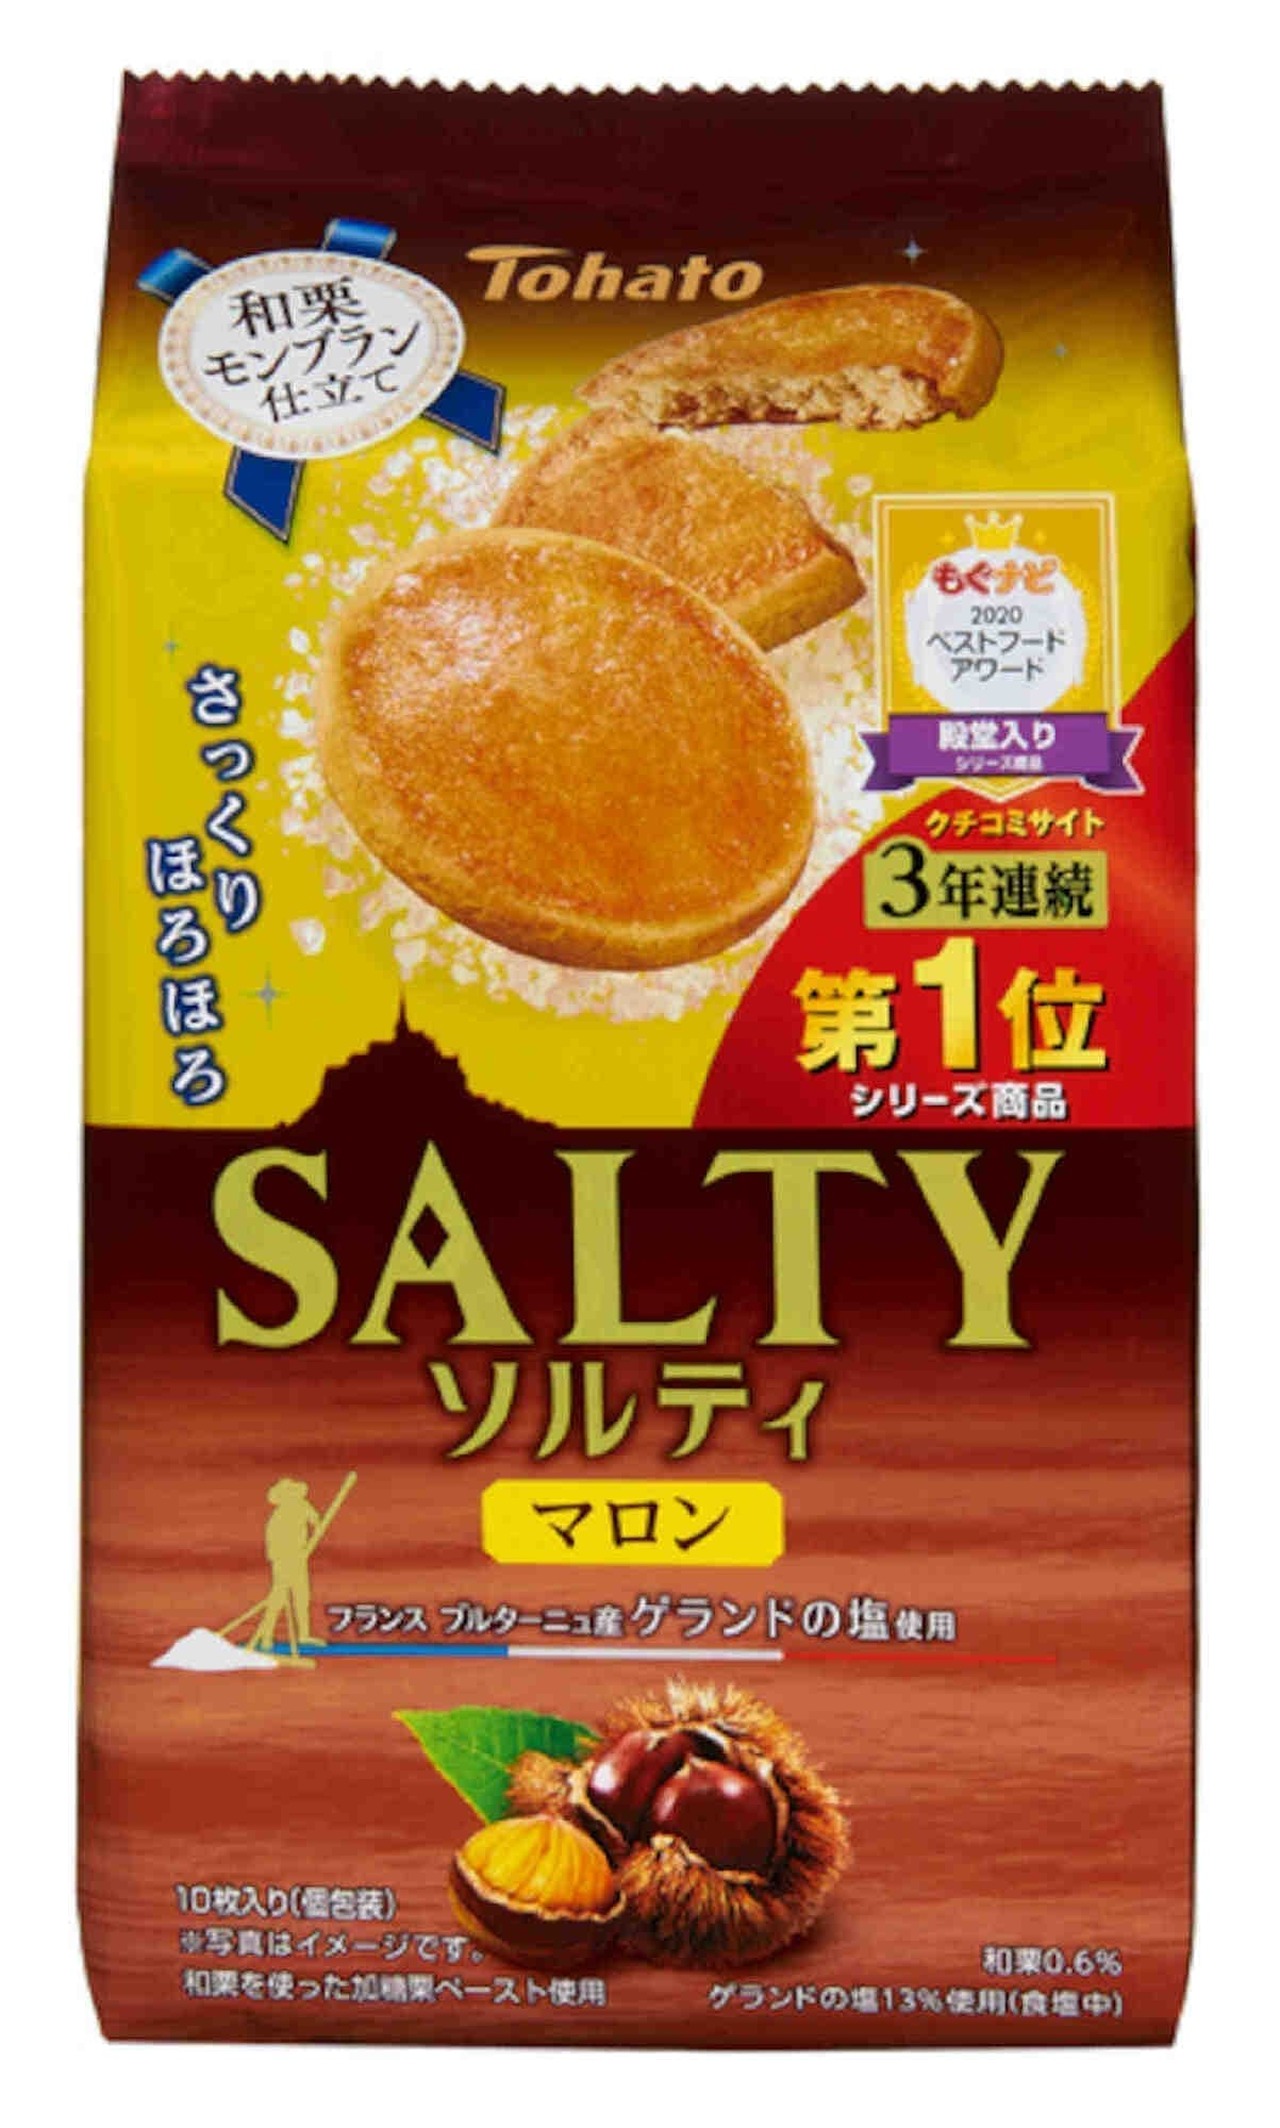 Tohato "Salty Marron"